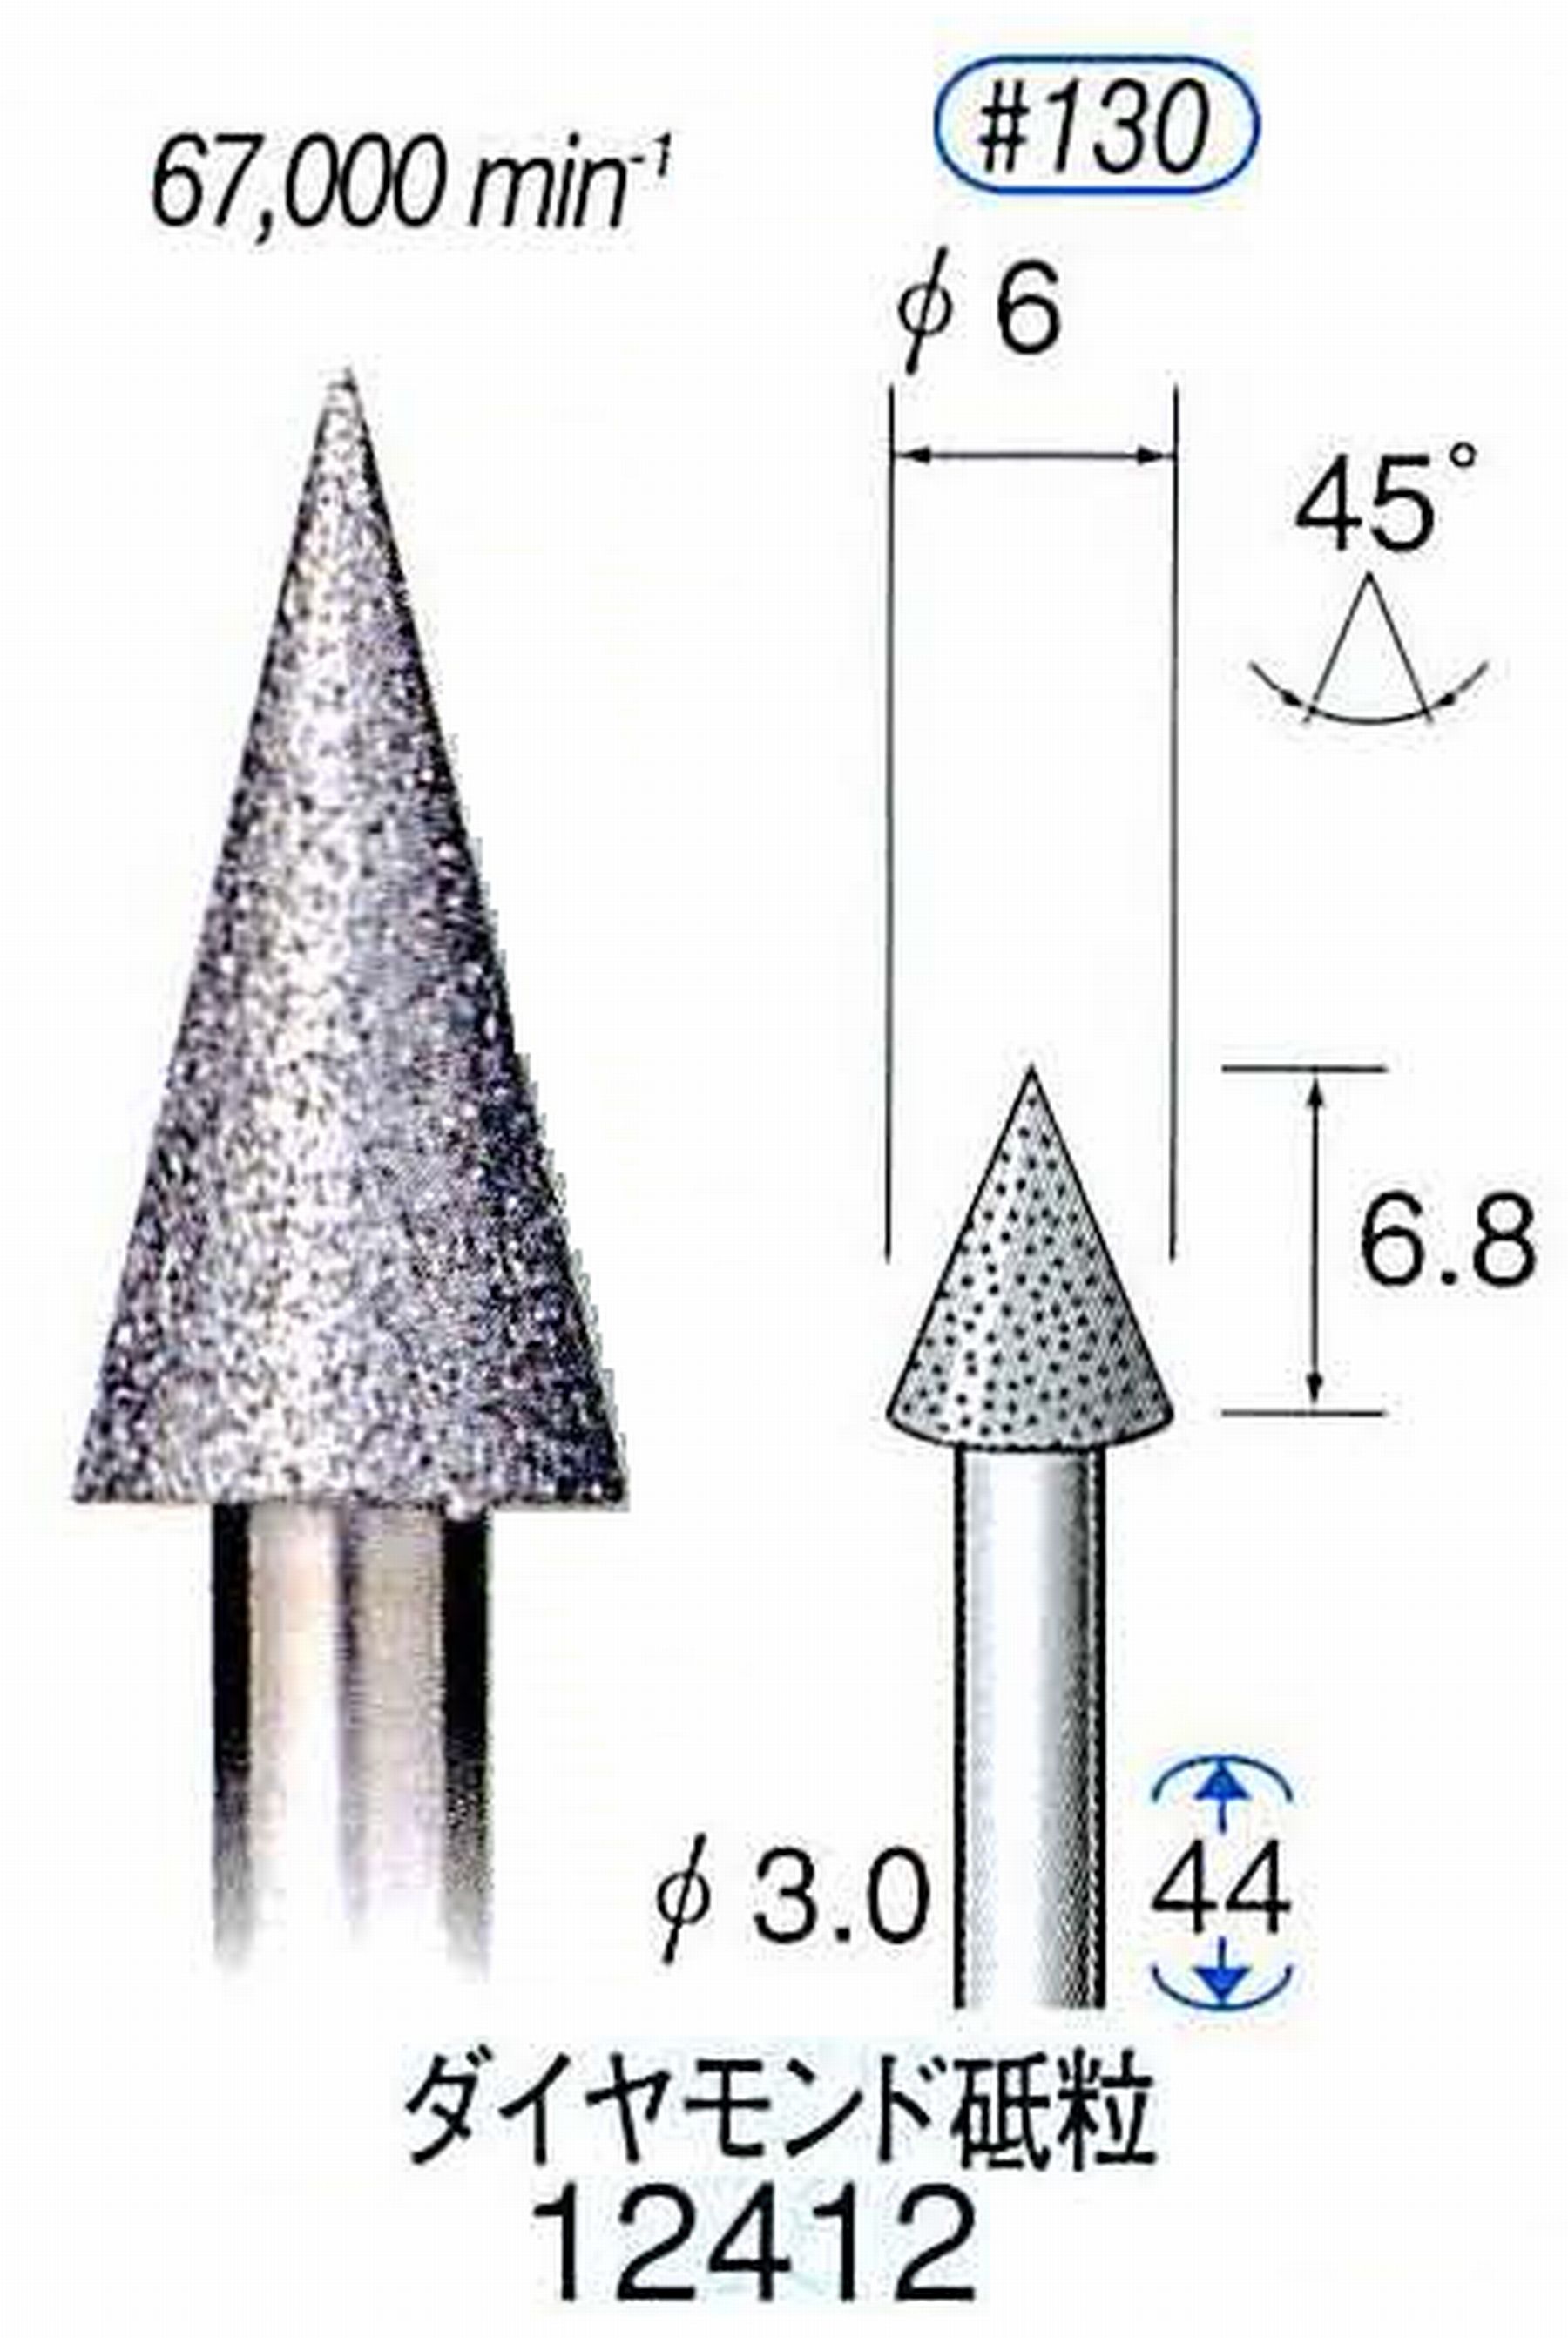 ナカニシ/NAKANISHI 電着ダイヤモンド ダイヤモンド砥粒 軸径(シャンク)φ3.0mm 12412